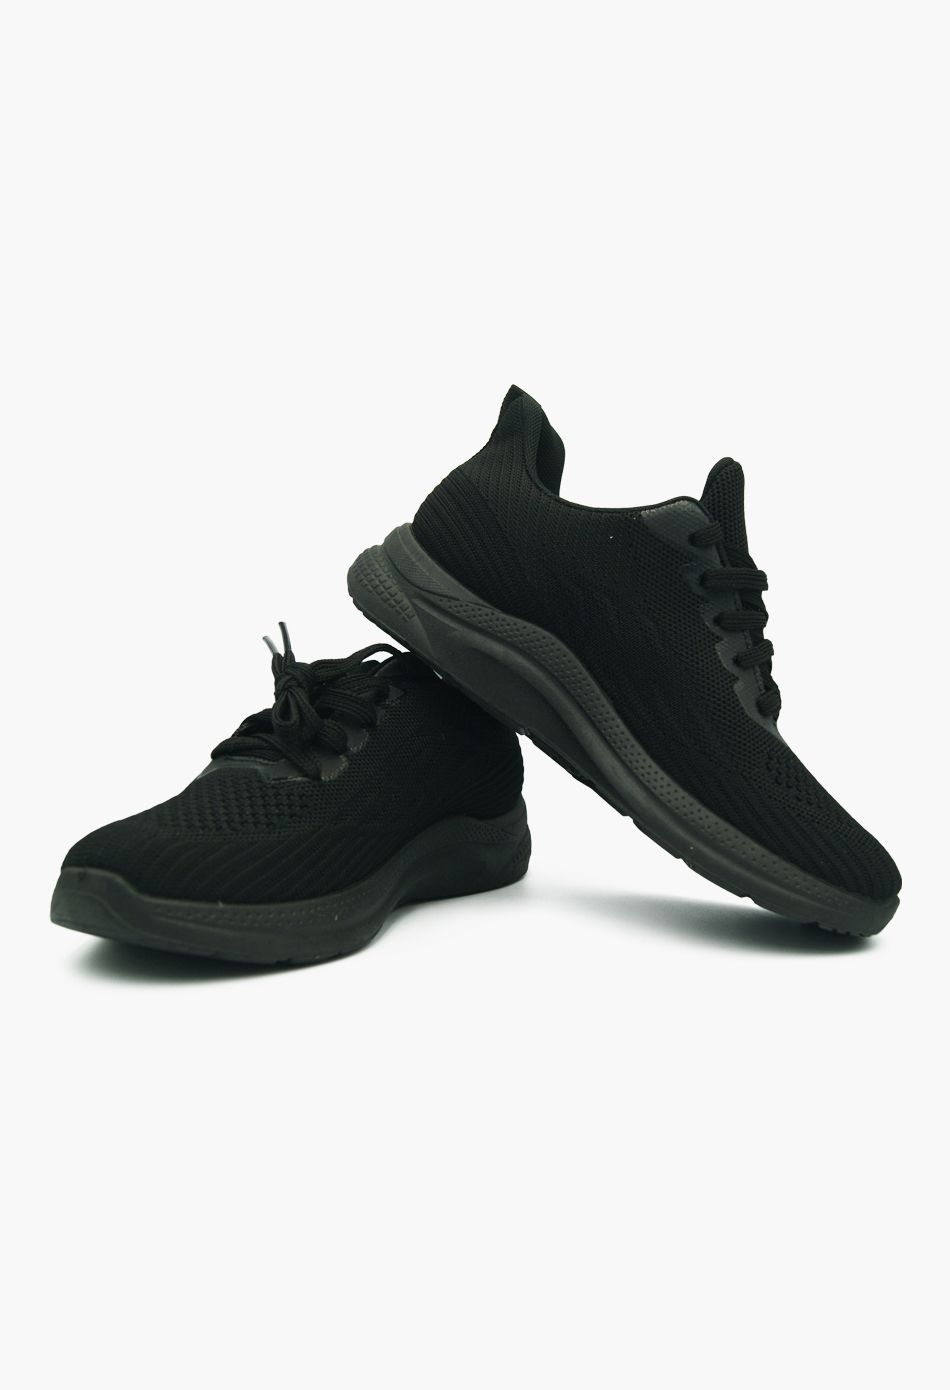 Γυναικεία sneakers τύπου κάλτσα Μαύρα / YDL5-black Γυναικεία Αθλητικά και Sneakers joya.gr